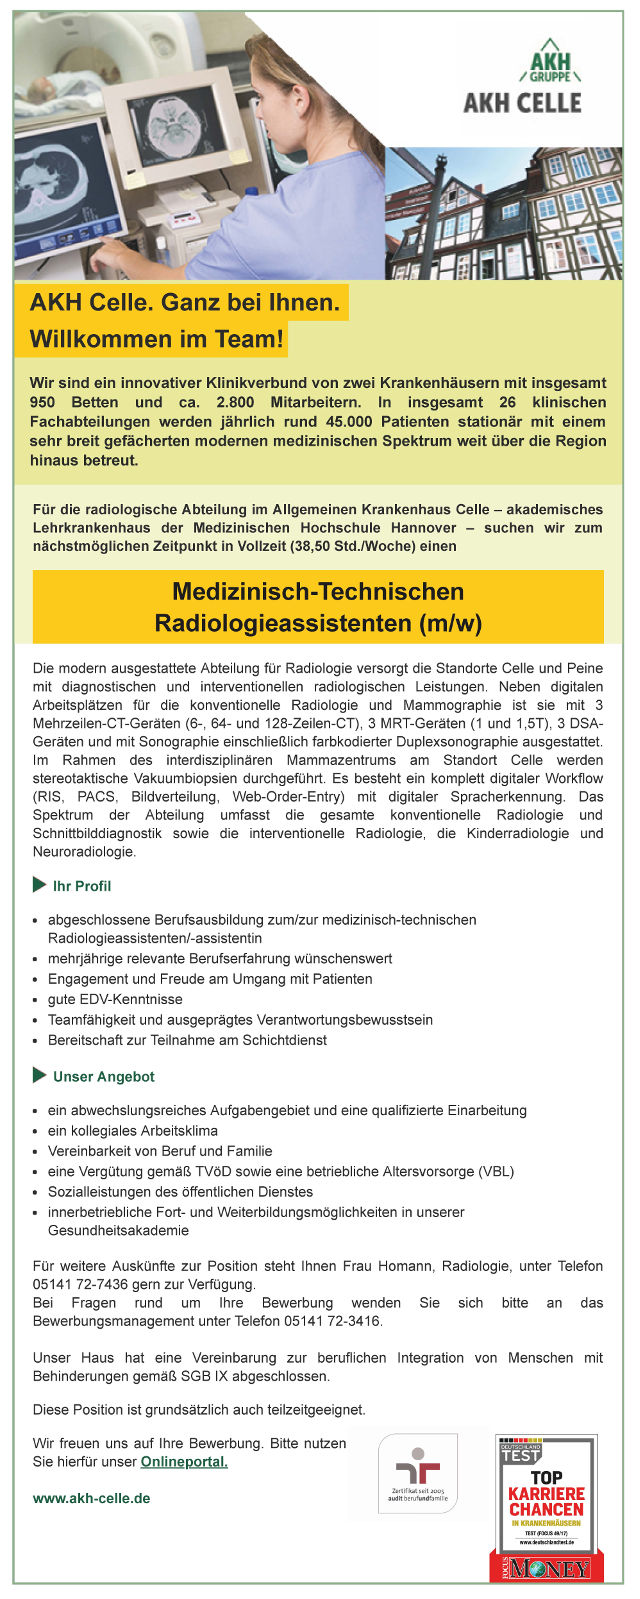 Allgemeines Krankenhaus Celle: Medizinisch-Technischen Radiologieassistent (m/w)